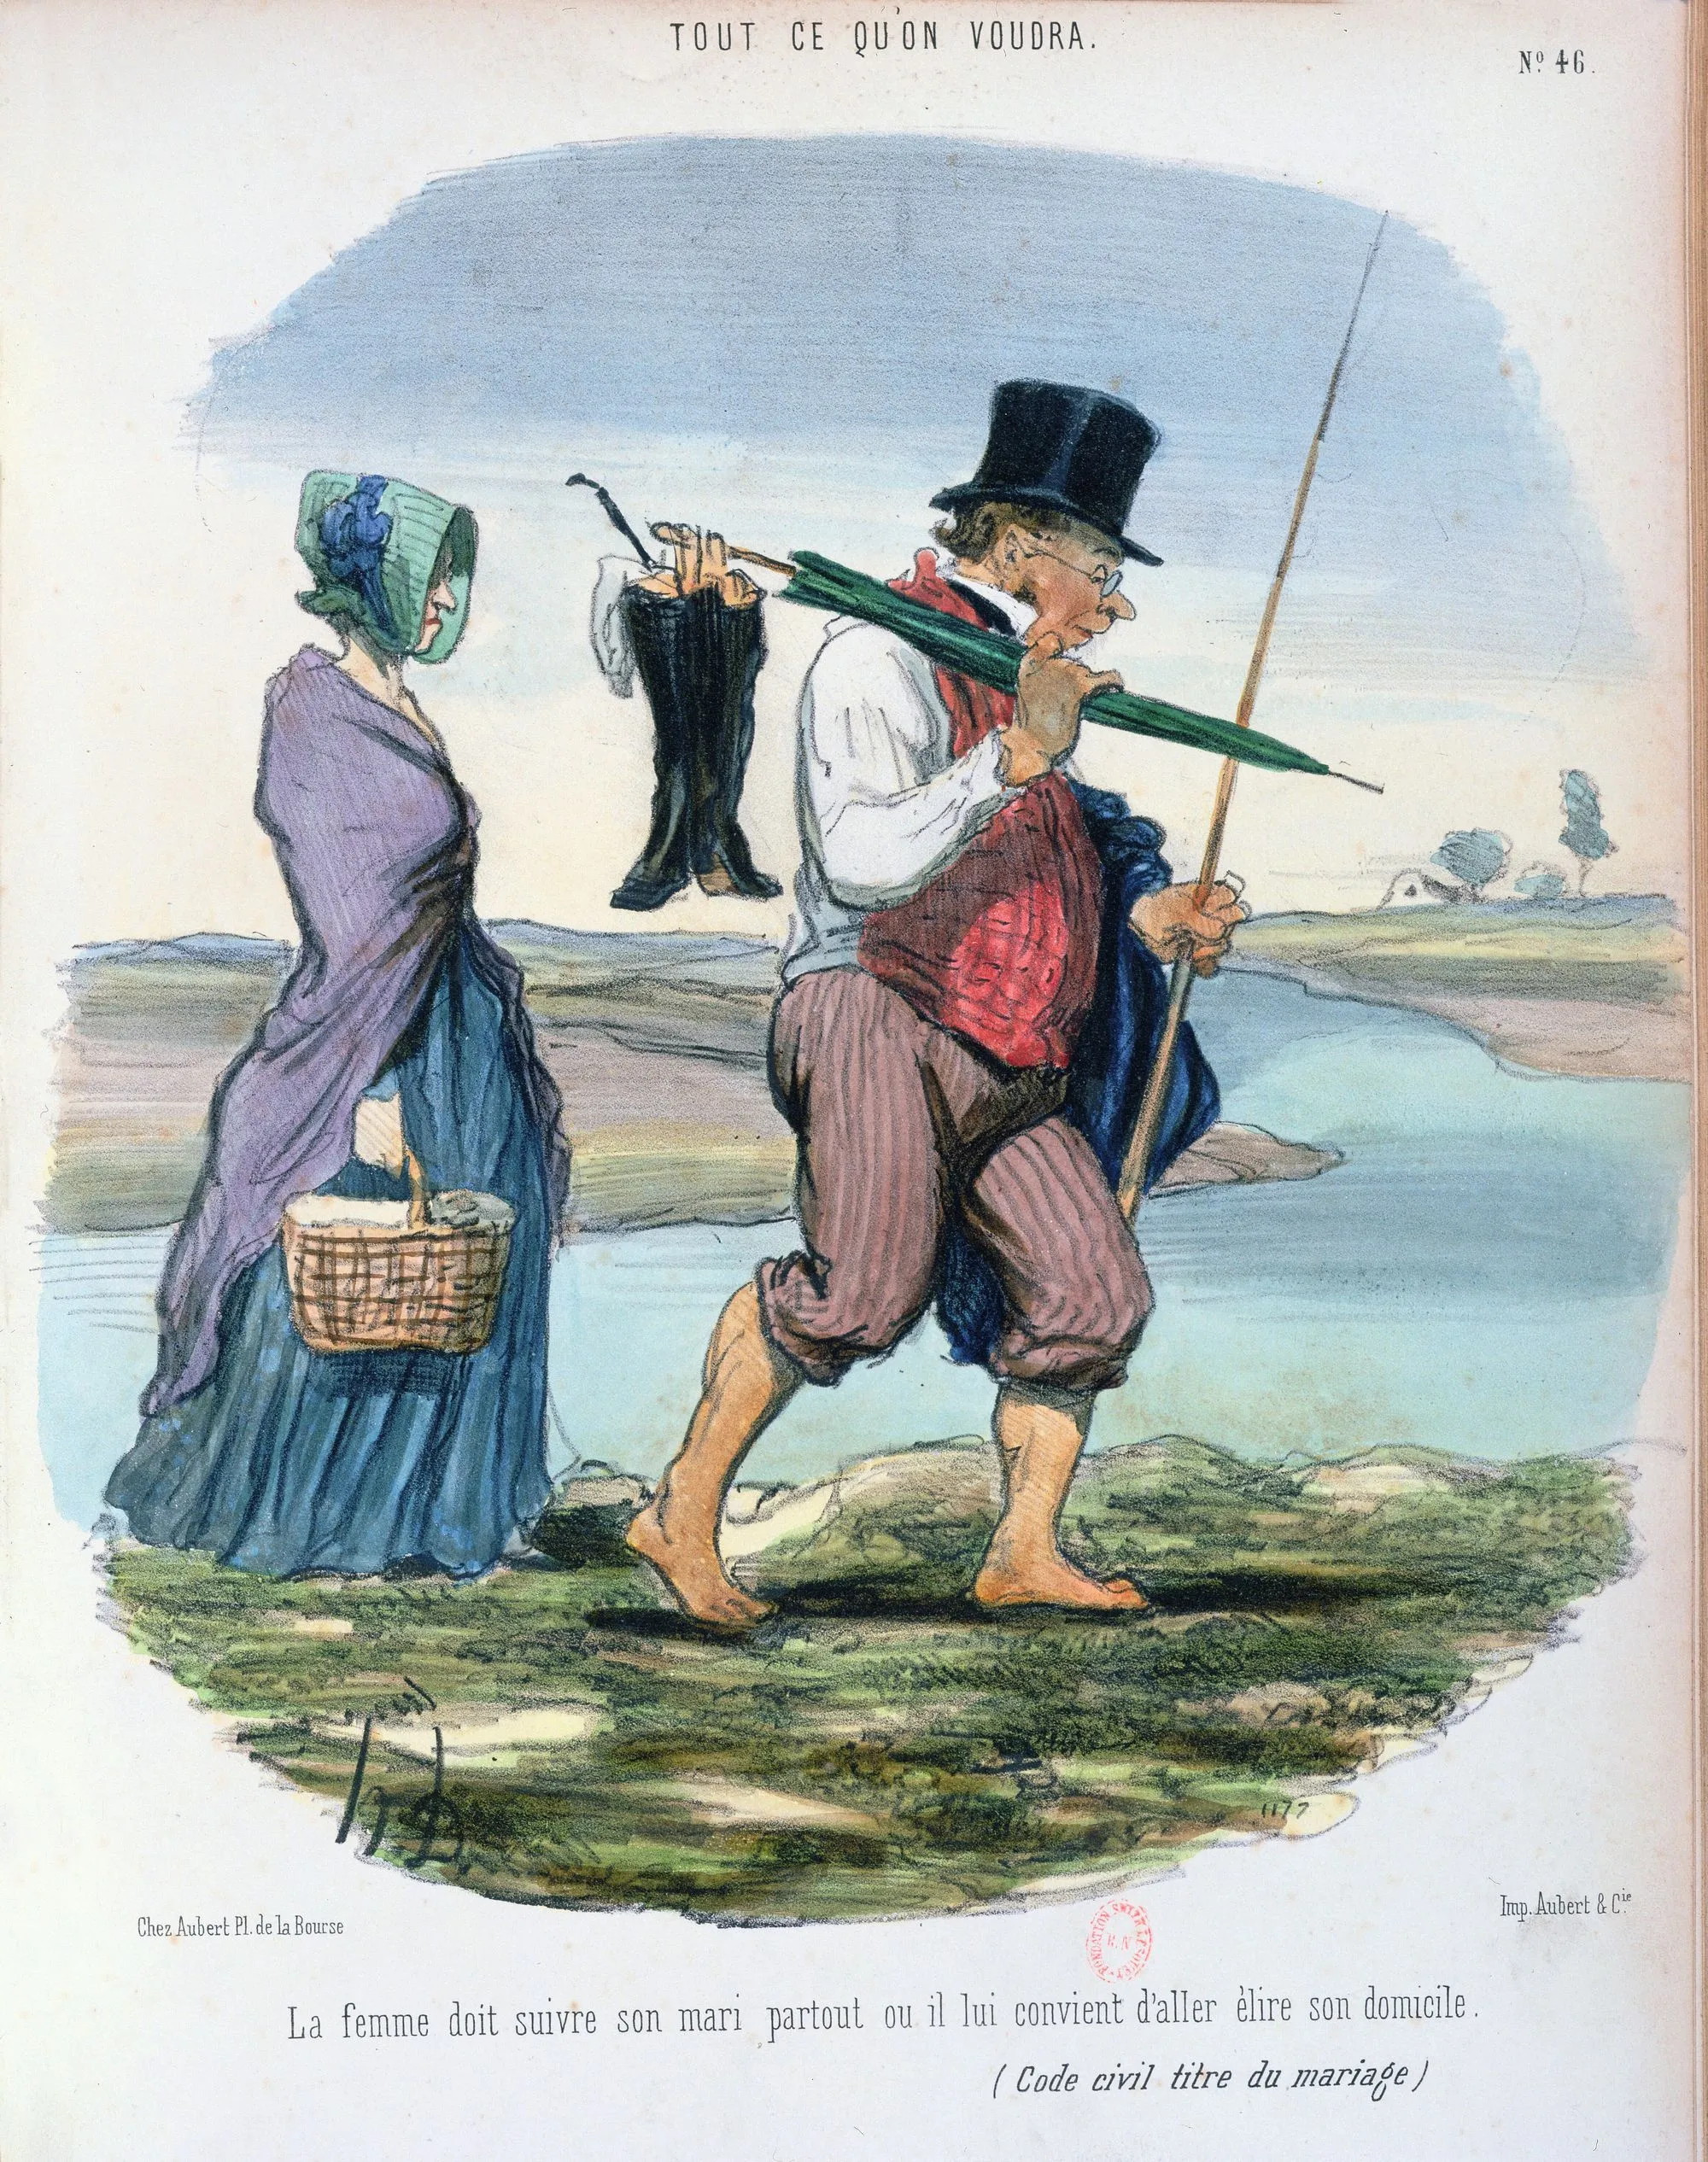 Honoré Daumier, Tout ce qu'on voudra, vers 1845, lithographie, BnF, Paris